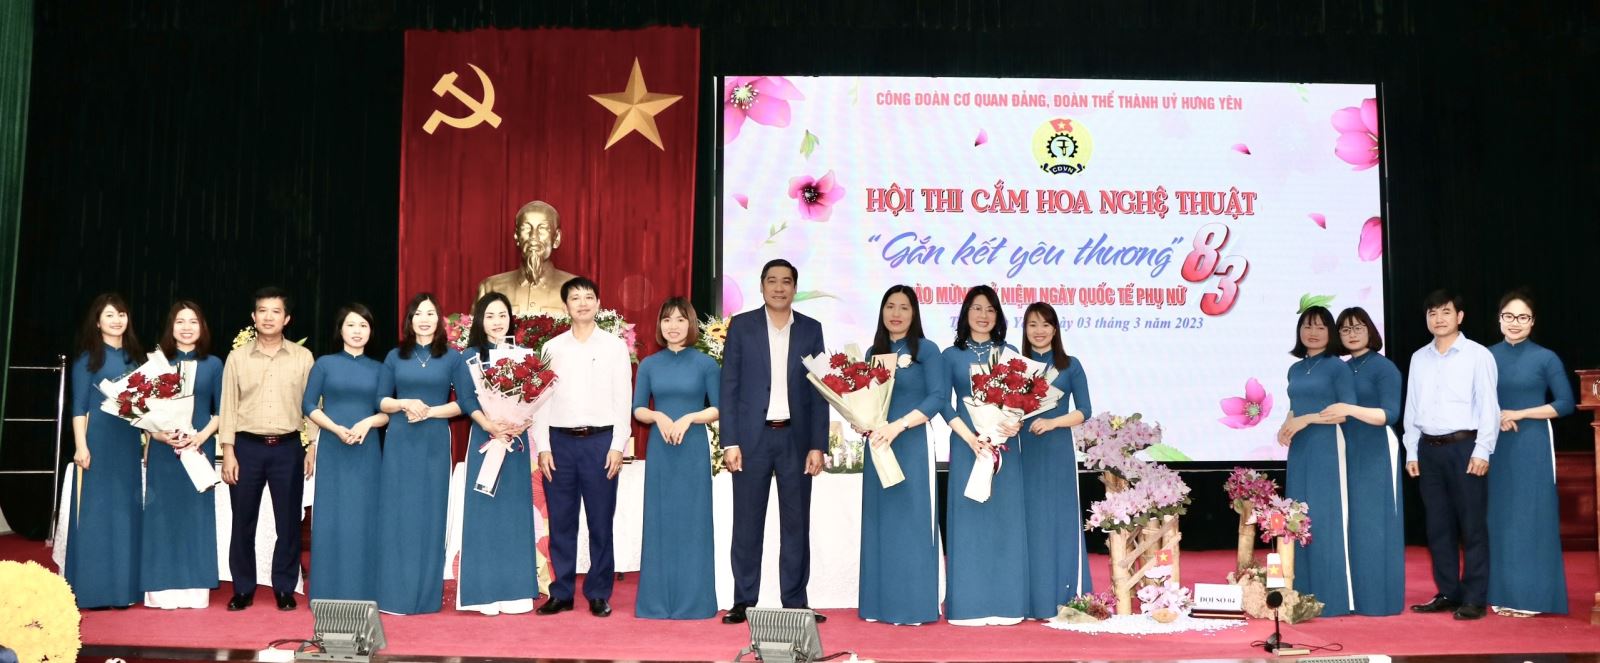 Công đoàn cơ quan Đảng, Đoàn thể Thành ủy Hưng Yên tổ chức Hội thi cắm hoa nghệ thuật